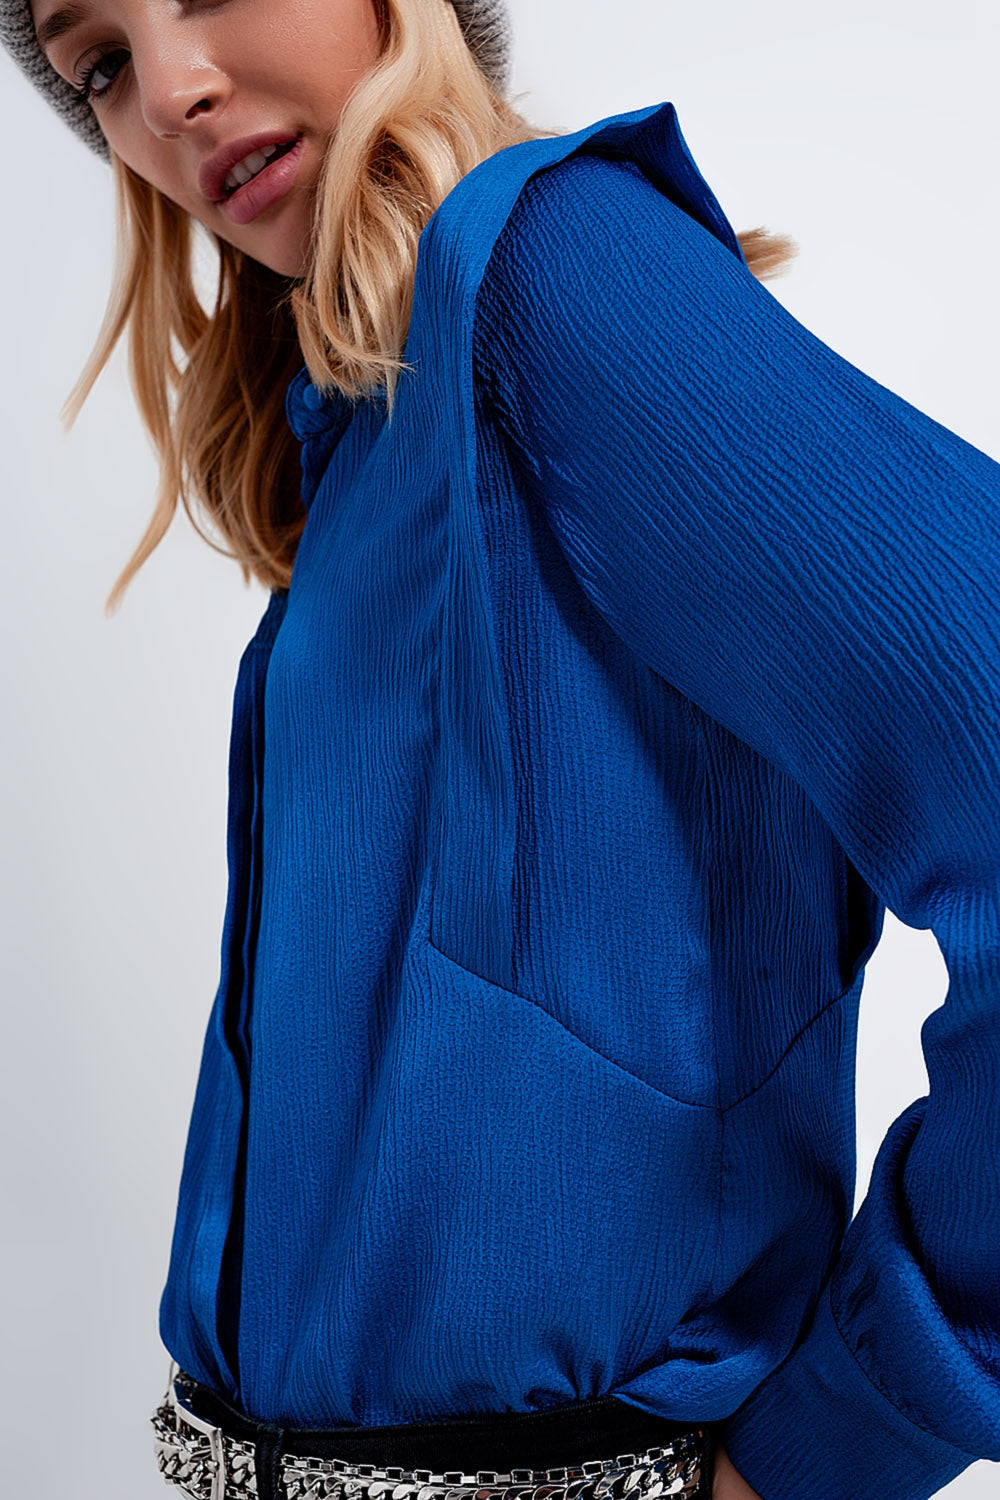 Nassaublauwe blouse met schouderdetails